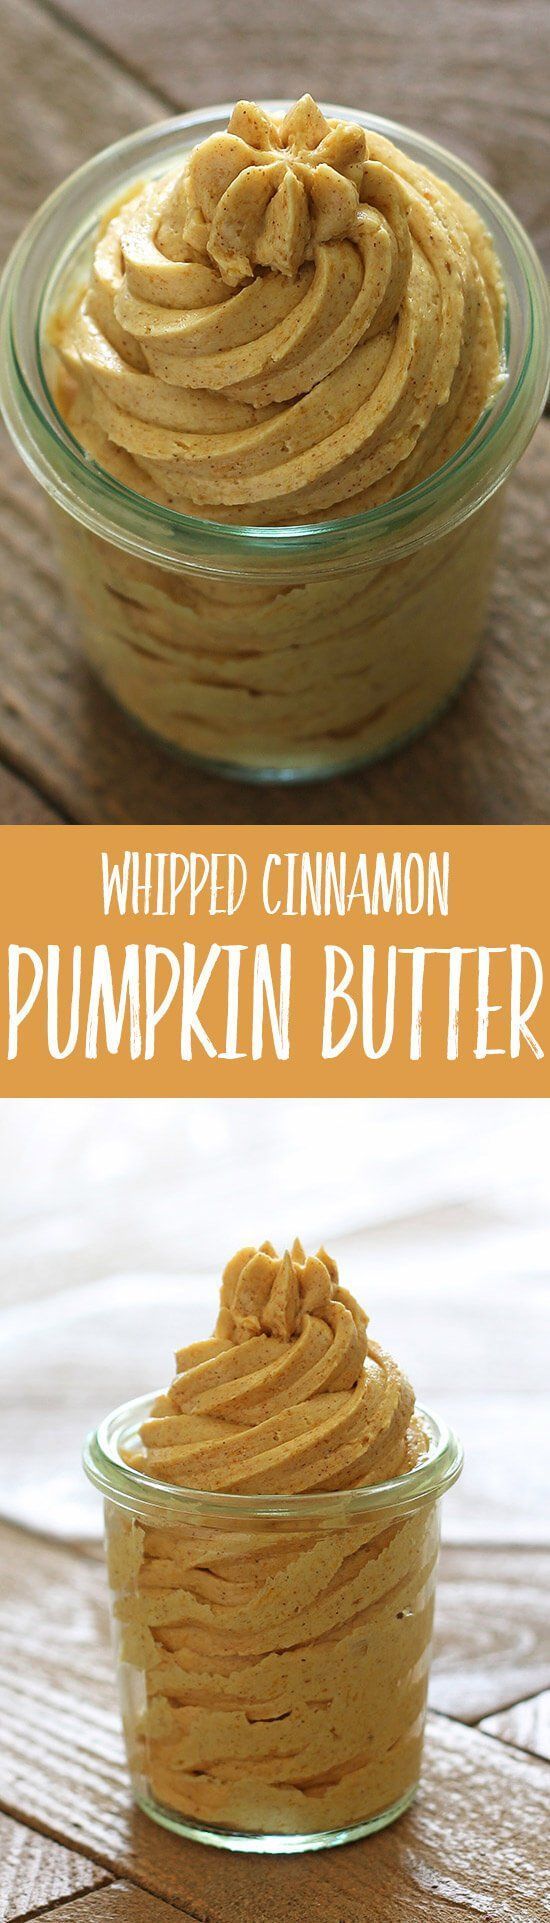 Whipped Cinnamon Pumpkin Butter